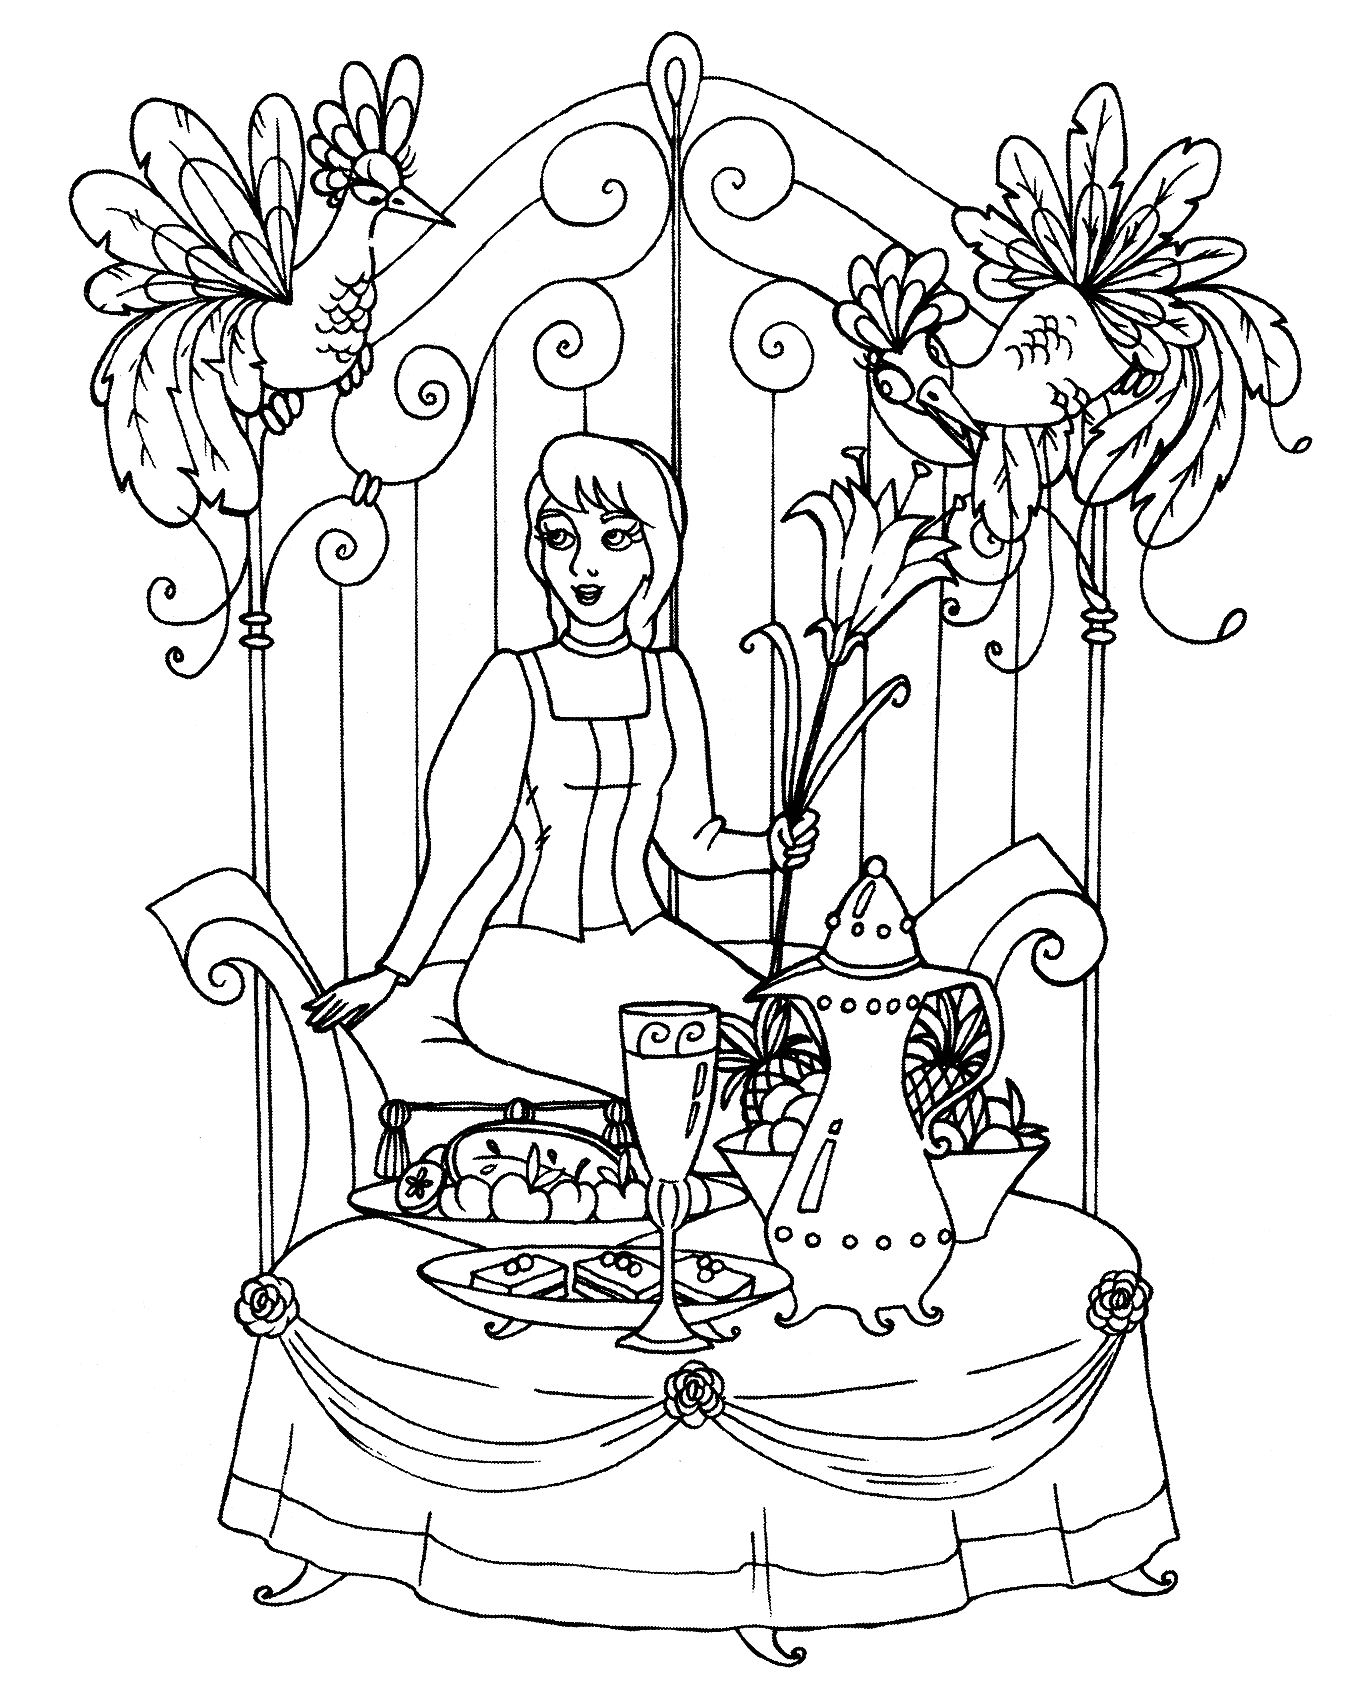 Иллюстрация к сказке Аленький цветочек раскраска